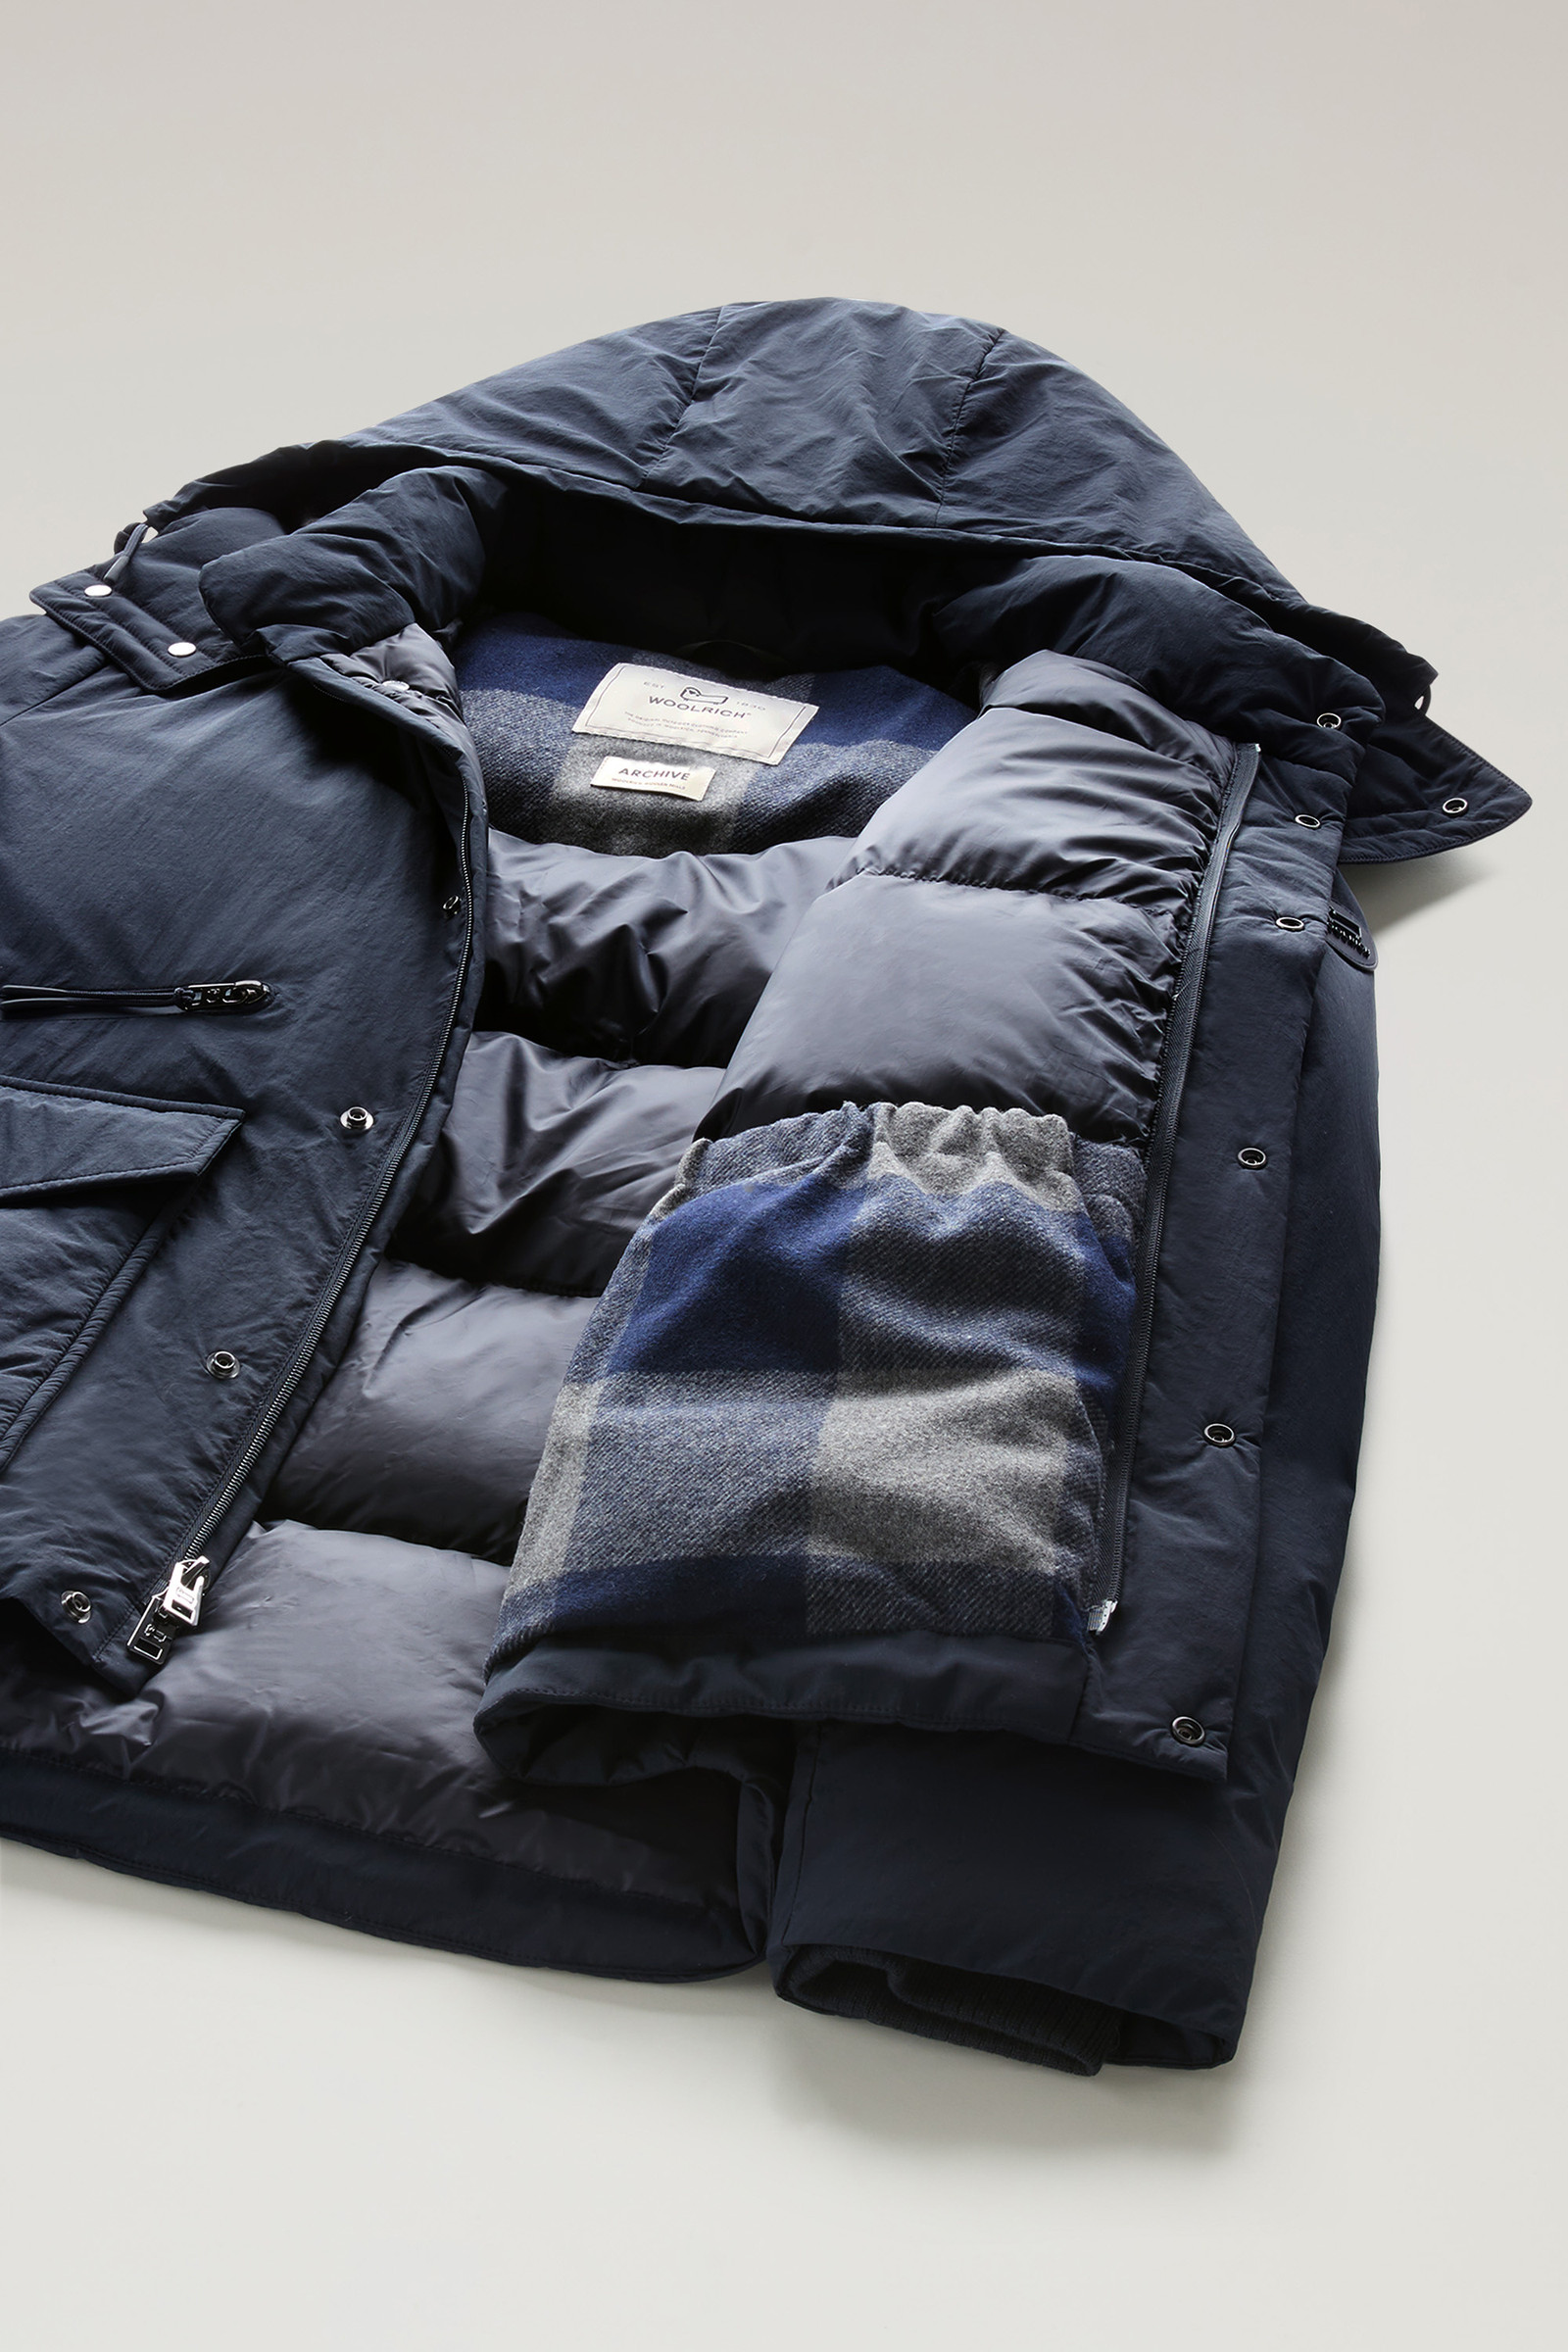 Men's Aleutian Jacket in Taslan Nylon Blue | Woolrich USA